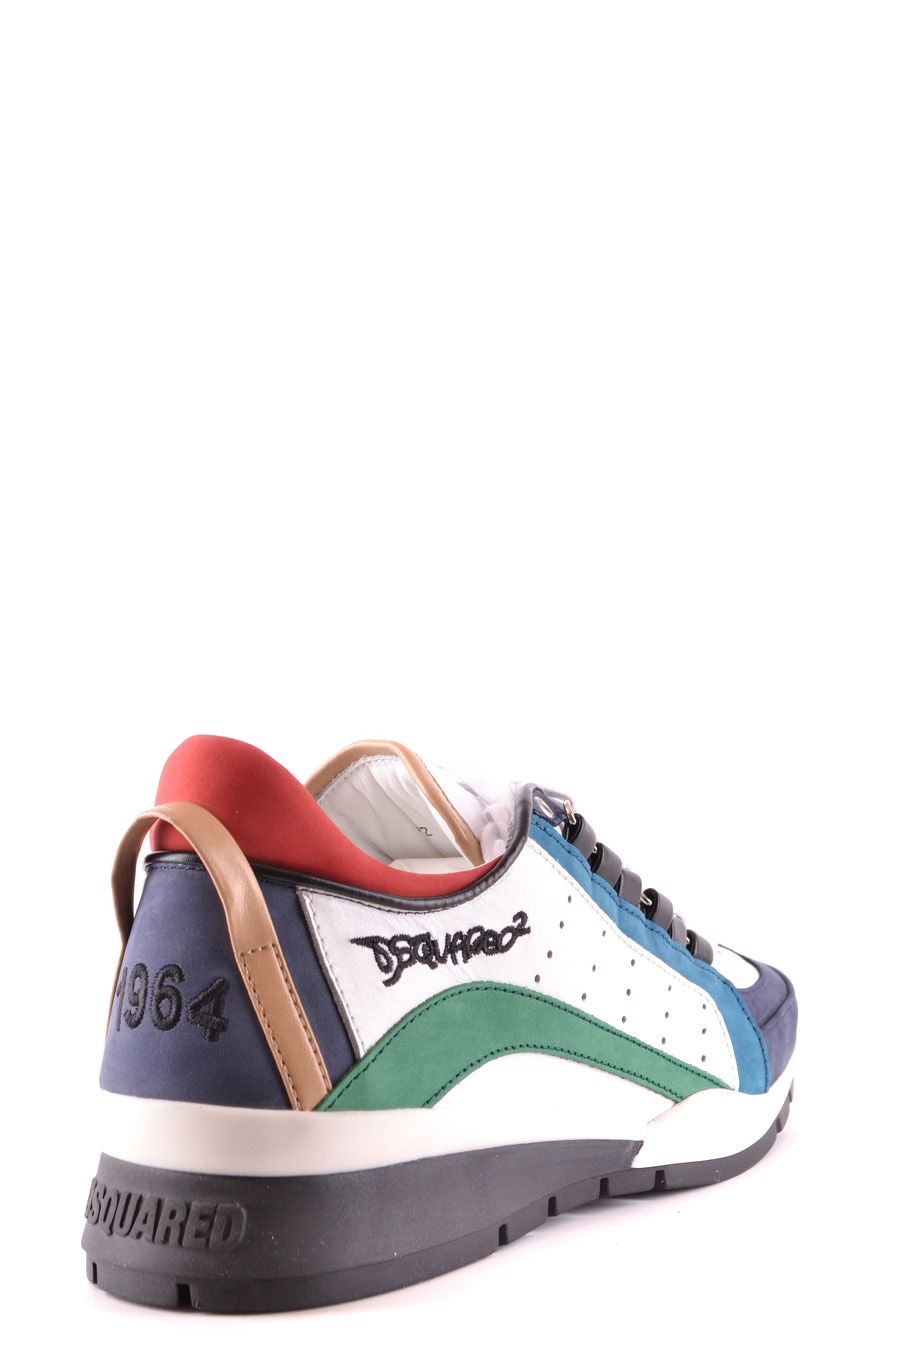 DSQUARED2 Shoes | ViganoBoutique.com